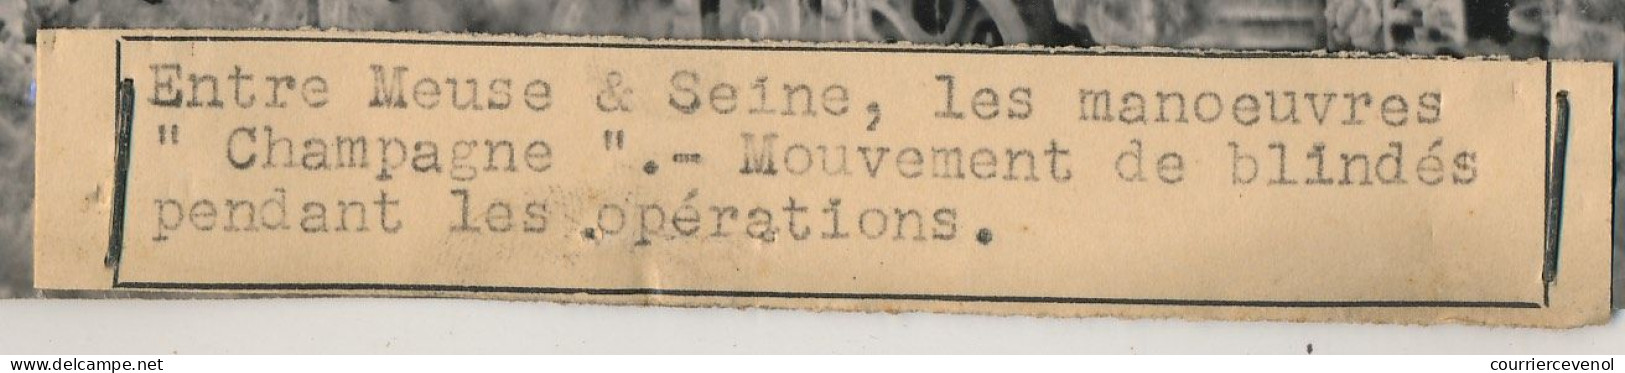 FRANCE - Photo De Presse Keystone - Entre Meuse Et Seine, Les Manoeuvres "Champagne" - Mouvement De Blindés... - War, Military